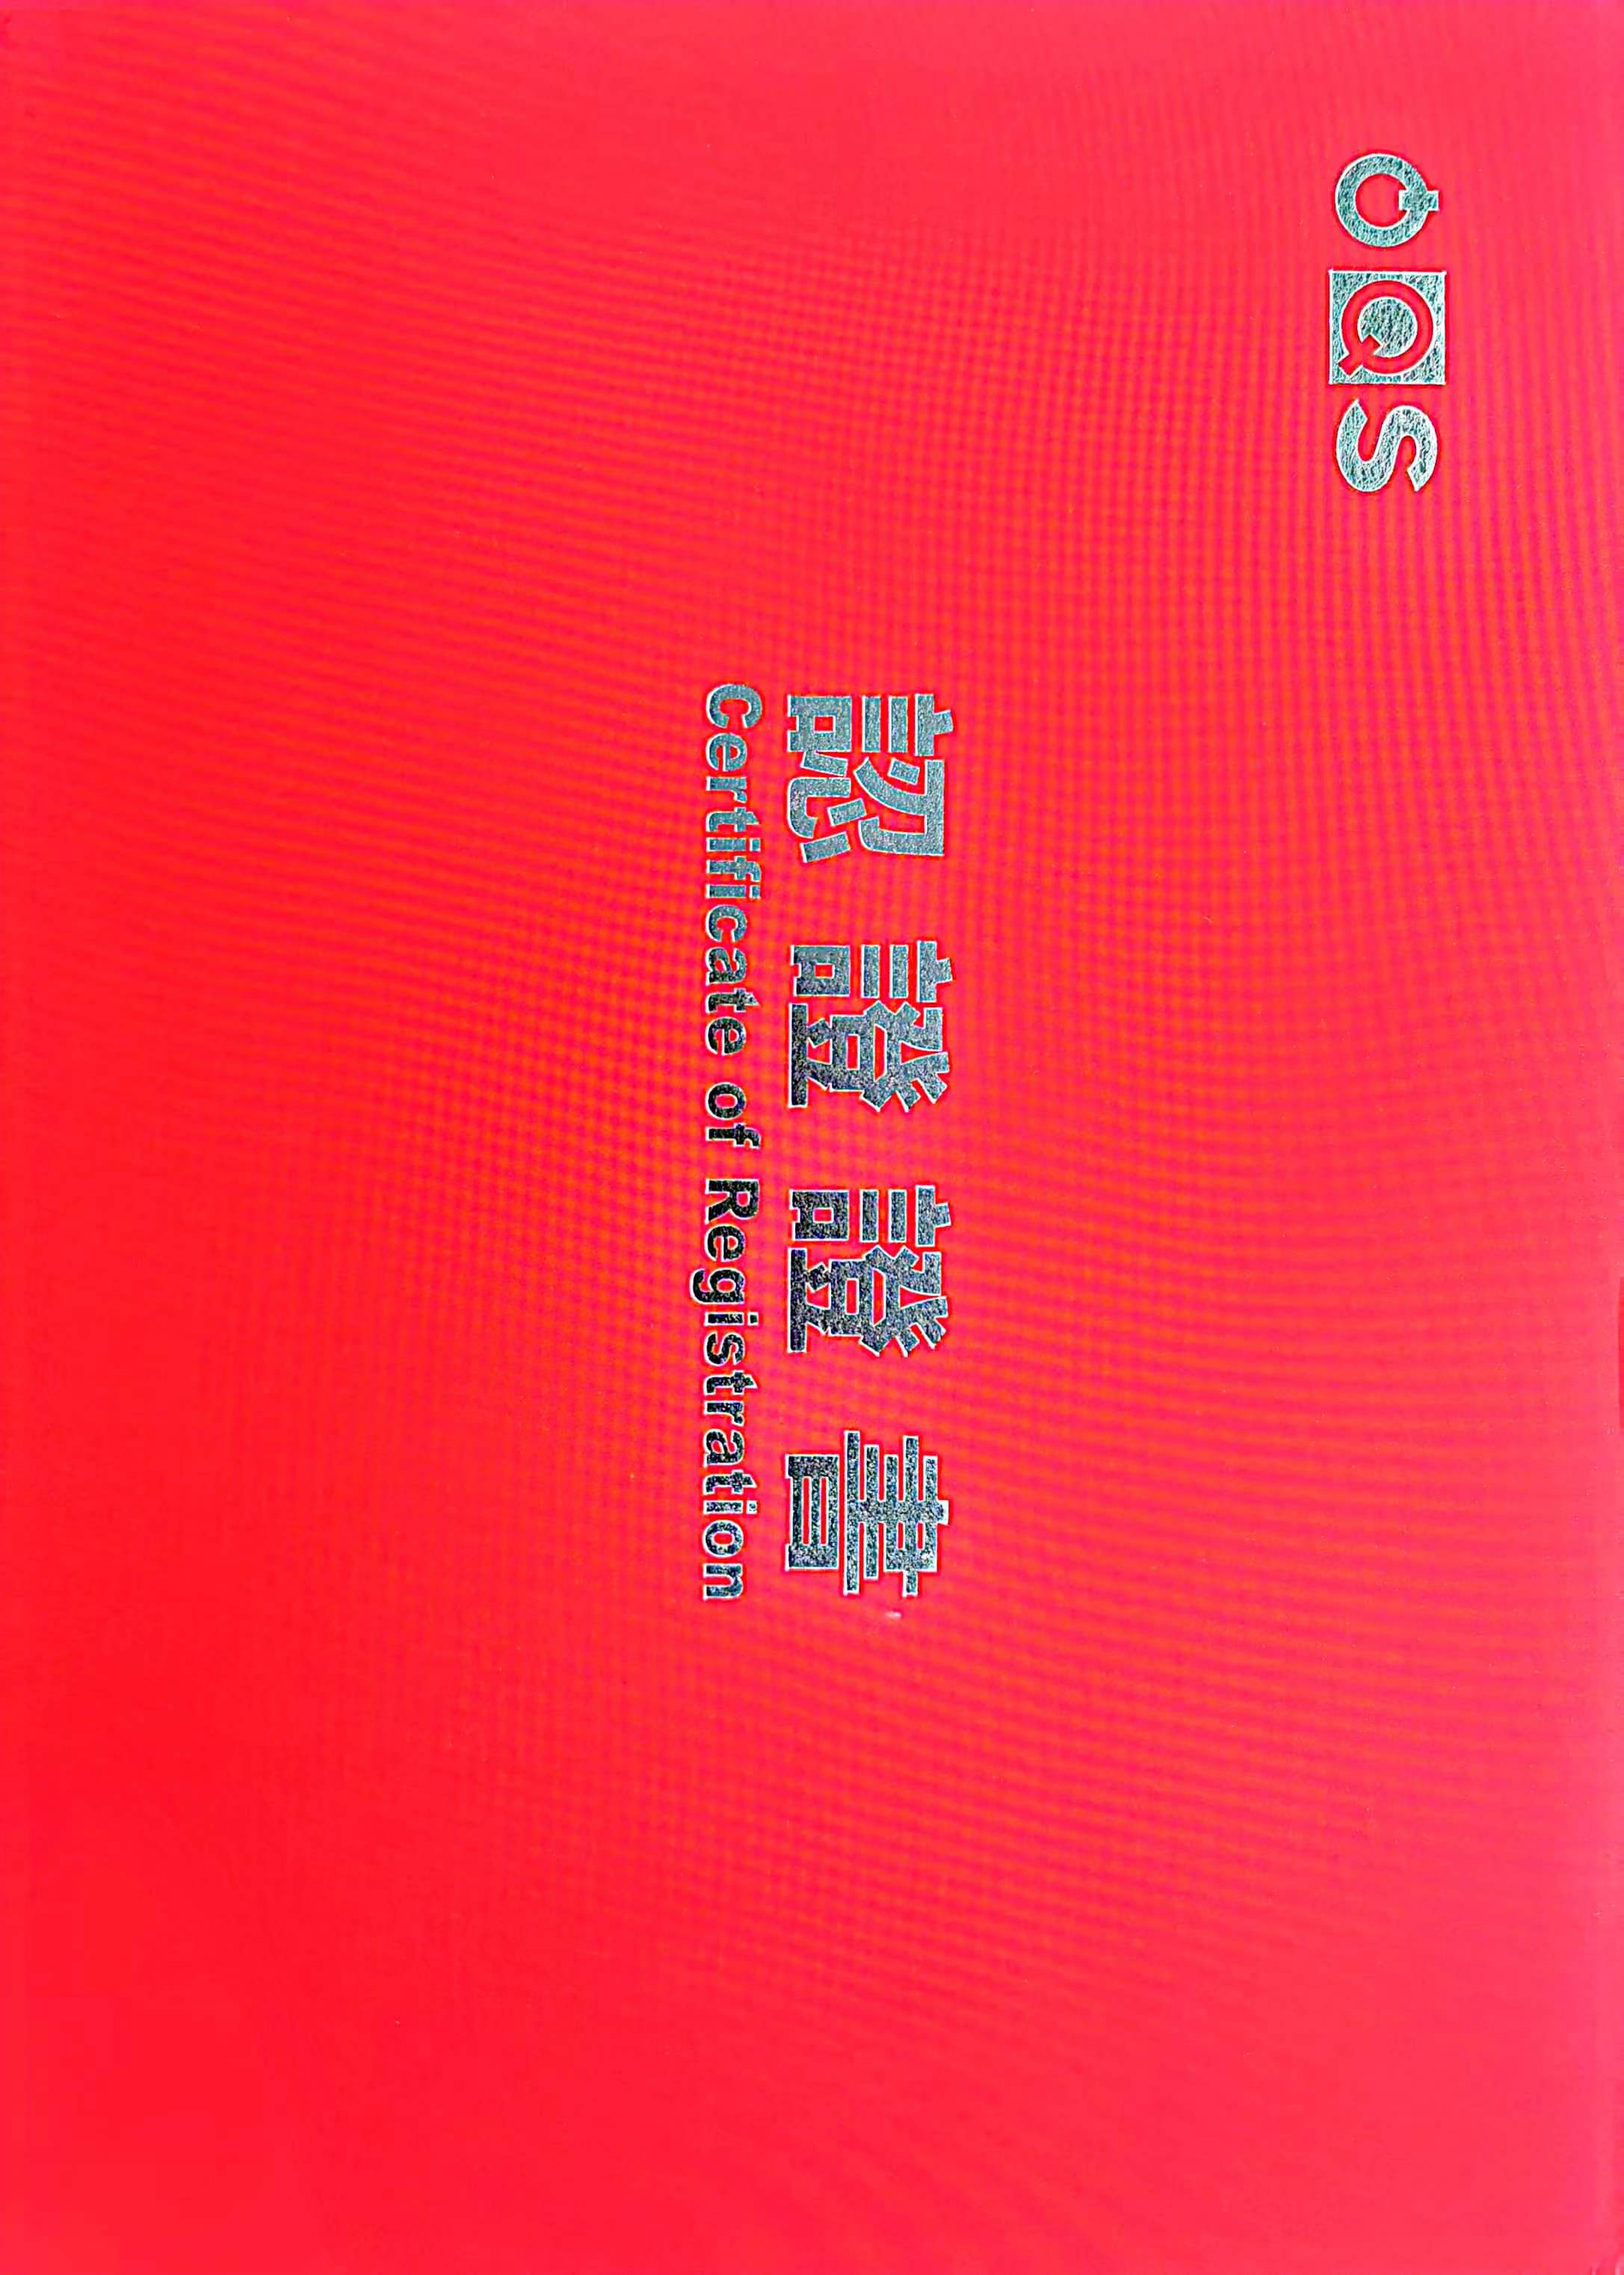 Hebei Qiangsheng Machinery Parts Co., Ltd. hat de IATF19649-sertifikaasje trochjûn.